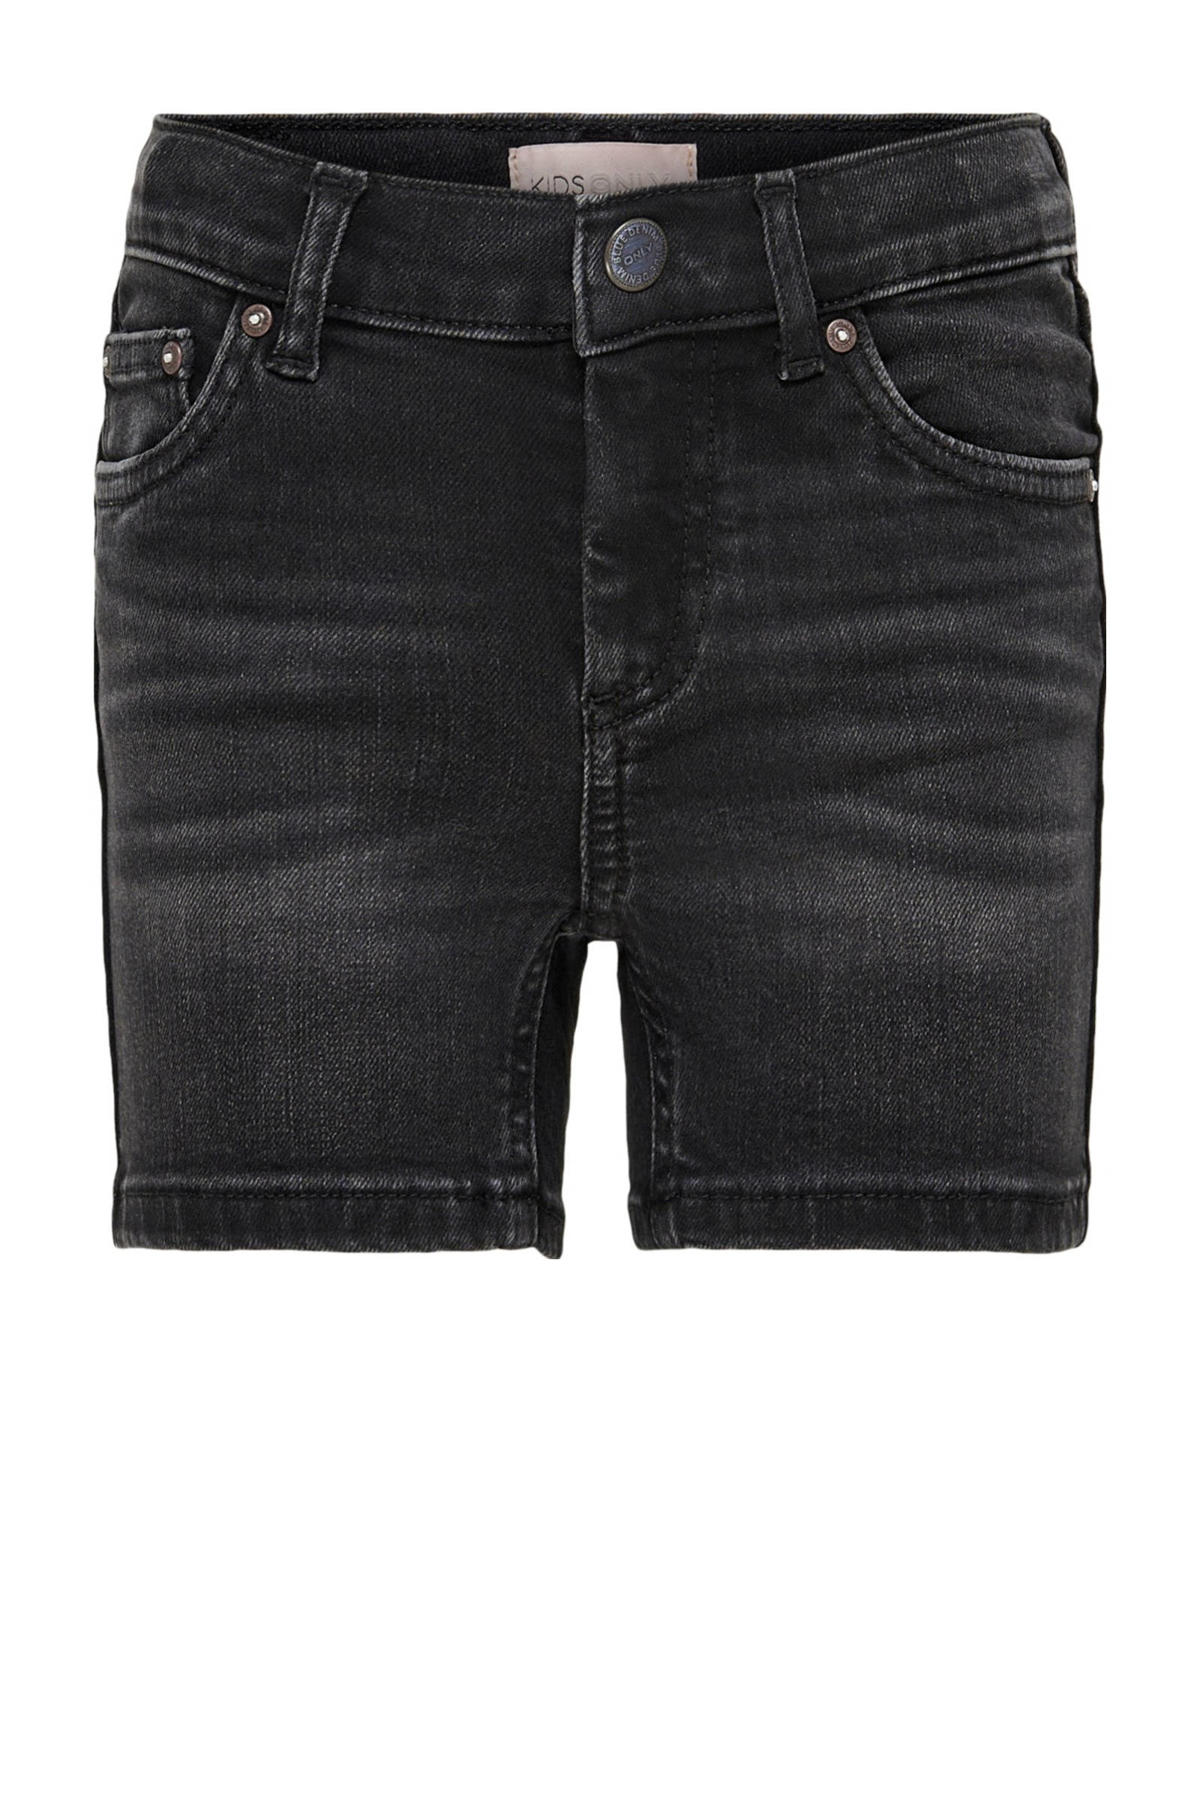 KIDS ONLY GIRL regular fit black short wehkamp denim | KONBLUSH jeans